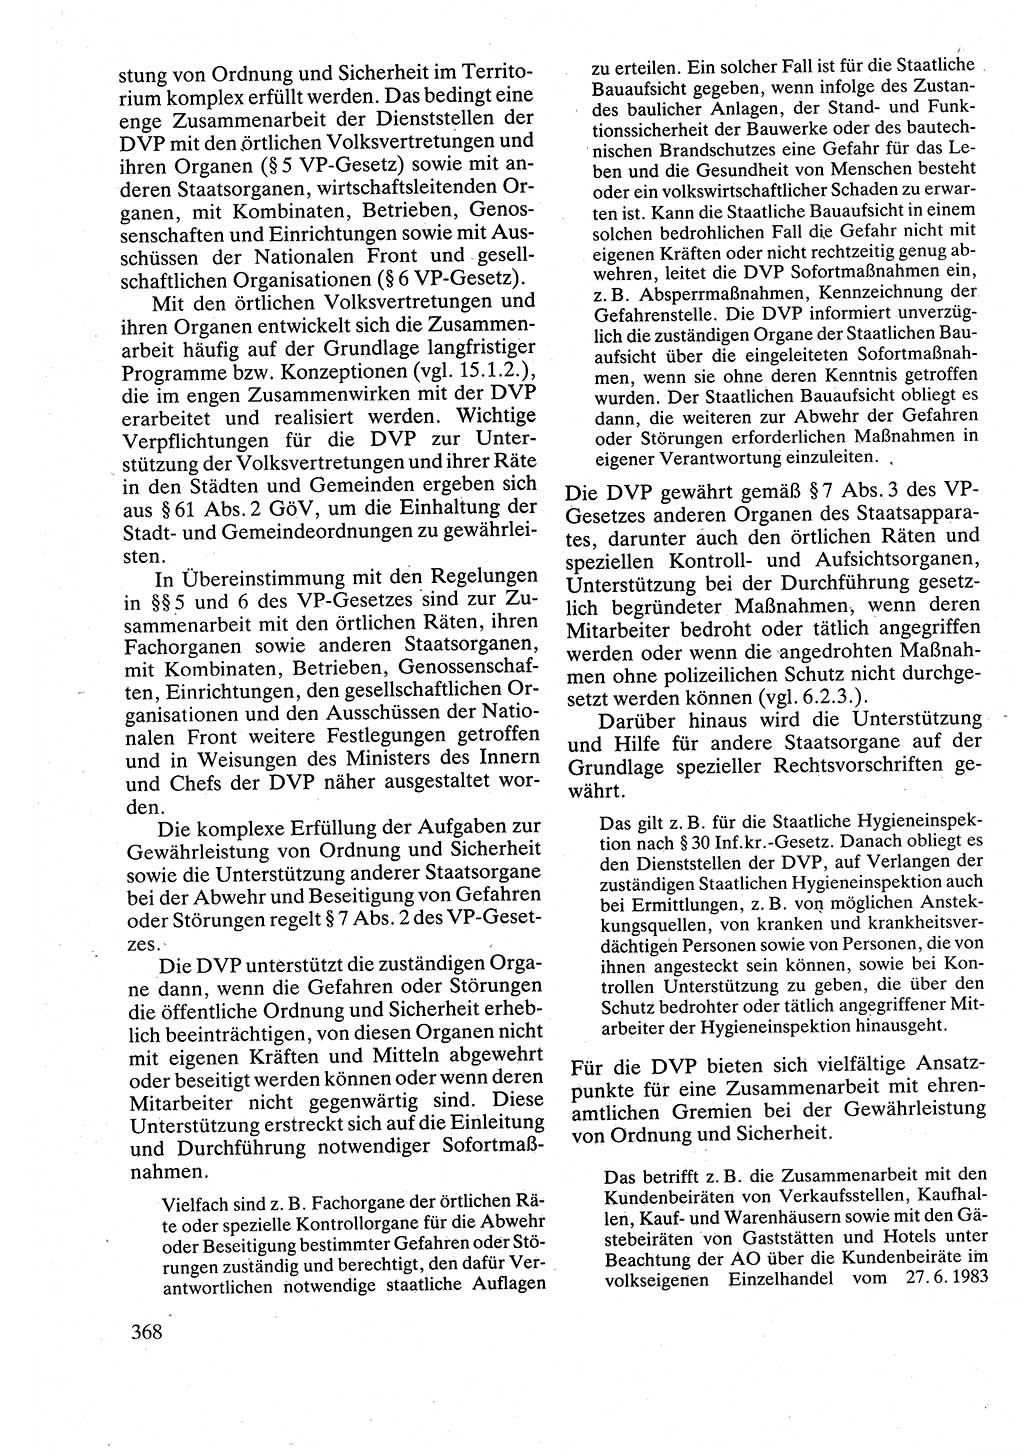 Verwaltungsrecht [Deutsche Demokratische Republik (DDR)], Lehrbuch 1988, Seite 368 (Verw.-R. DDR Lb. 1988, S. 368)